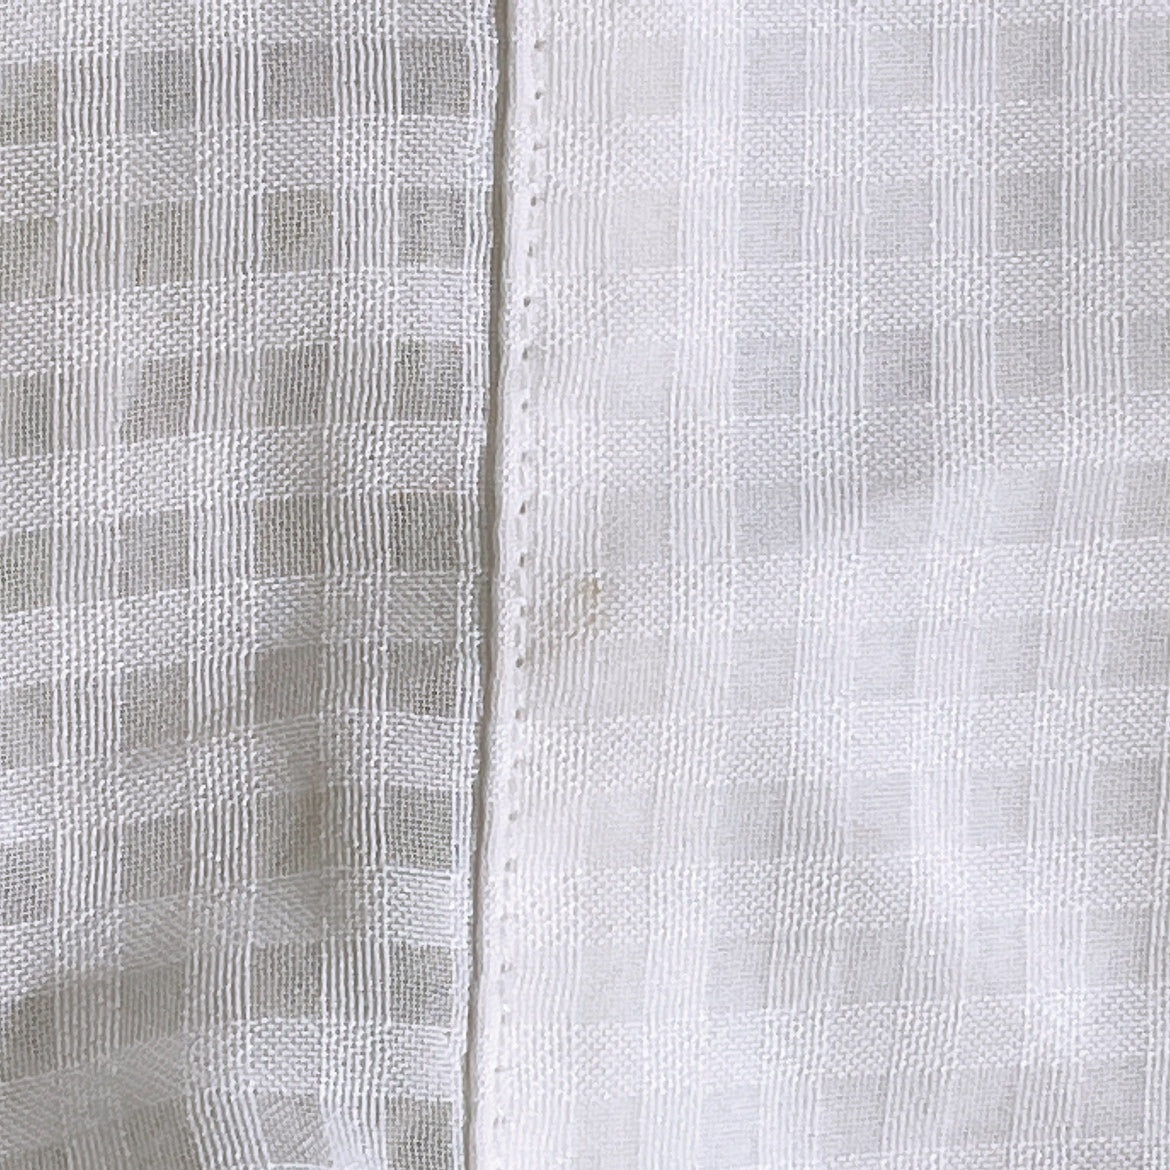 レディースS a.v.v. standard 袖なし シャツ 白 ホワイト オシャレ かわいい タグ付き アー・ヴェ・ヴェ 【19082】